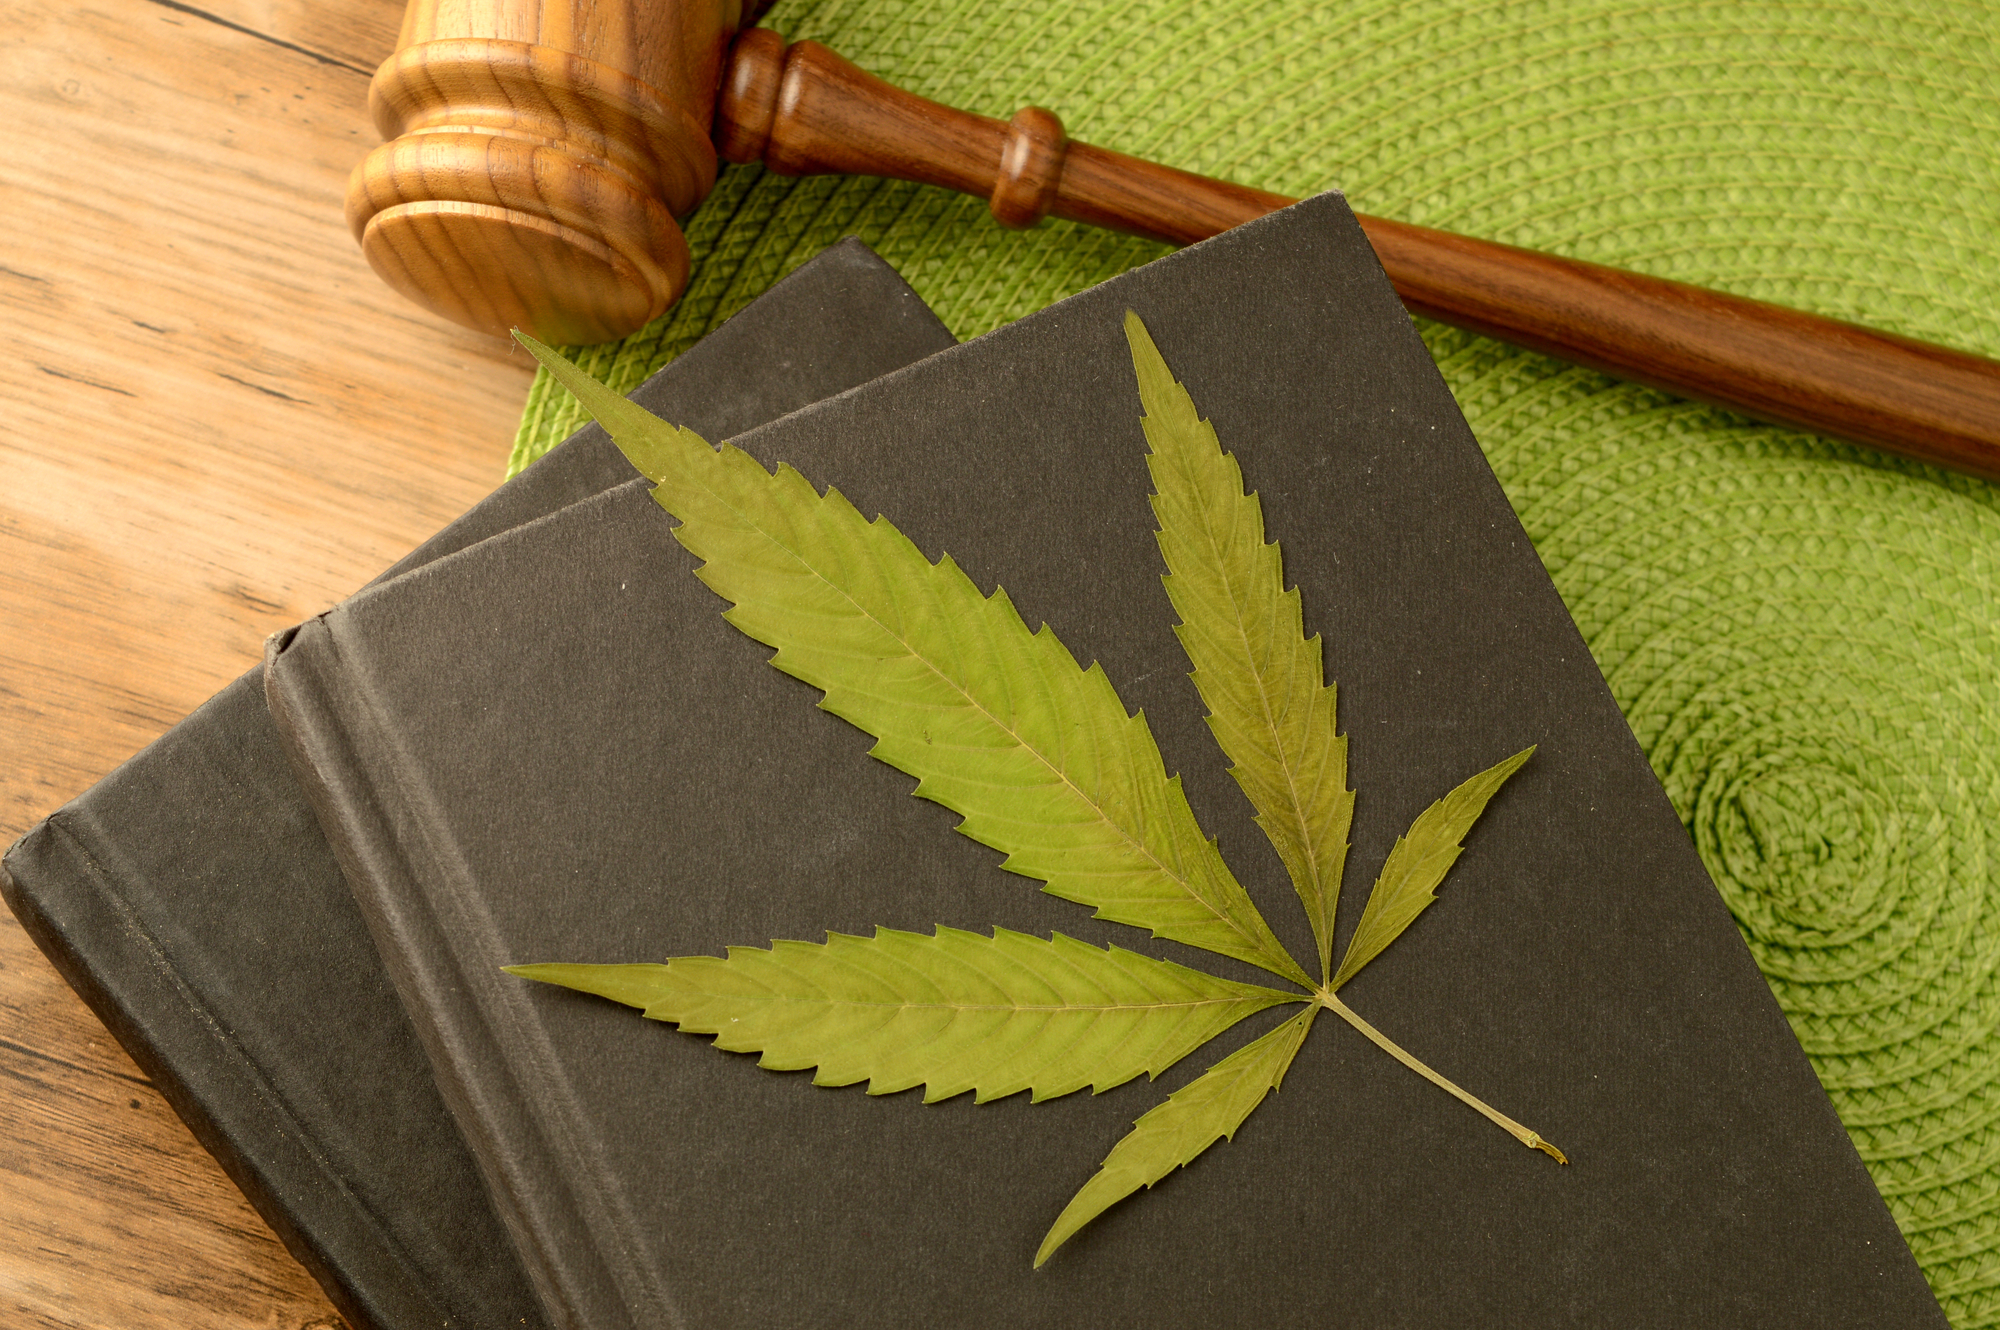 Cannabis-Rechtsstreitigkeiten